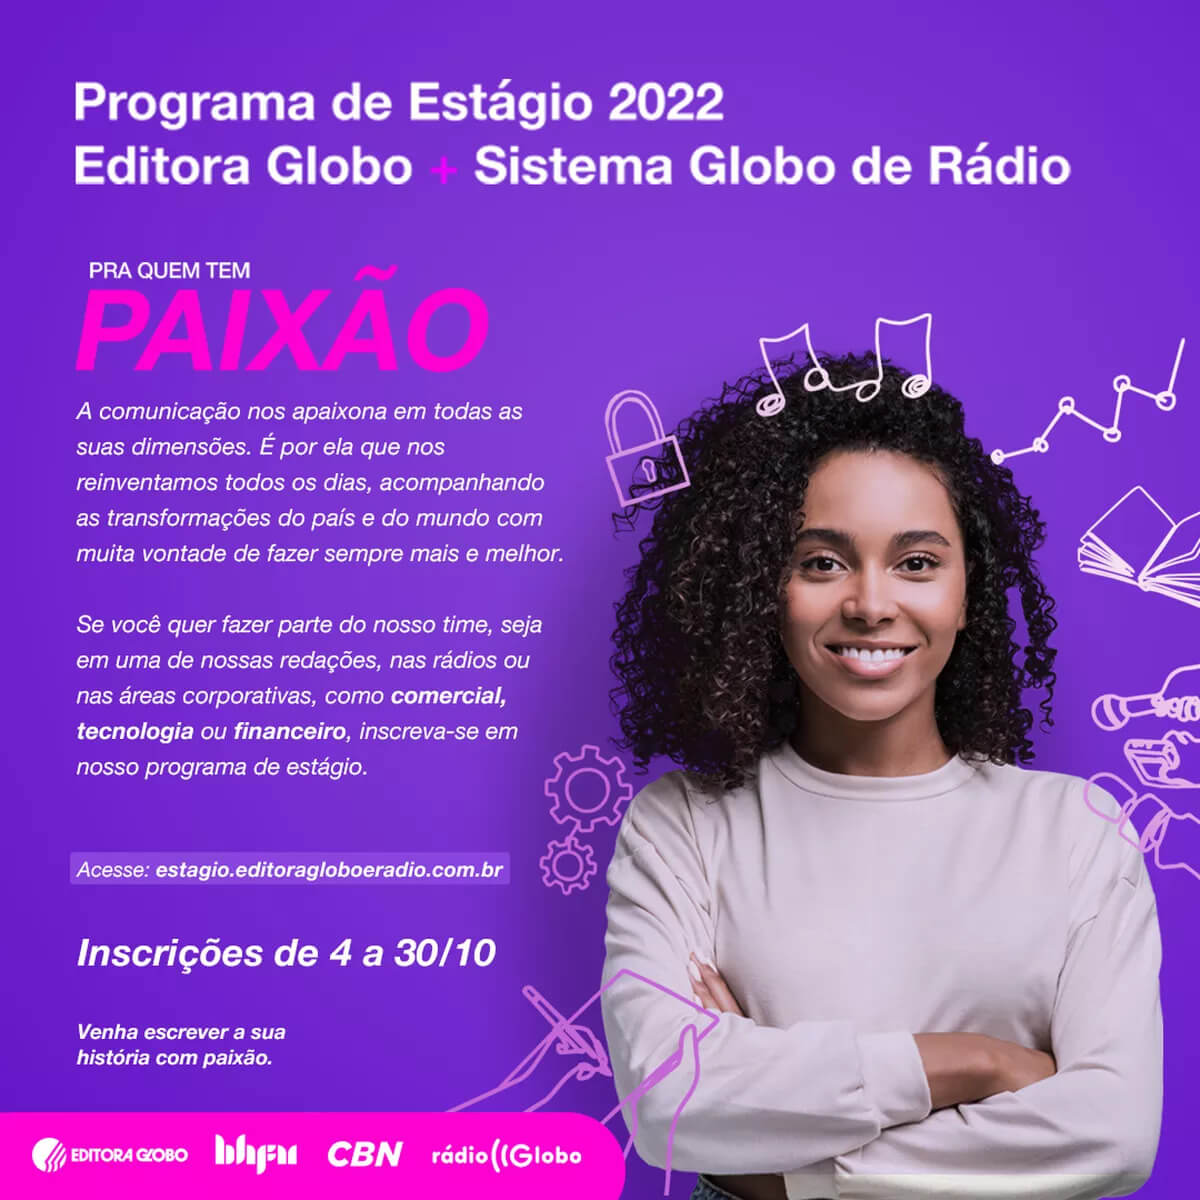 Editora Globo e Sistema Globo de Rádio abrem inscrições para programa de estágio